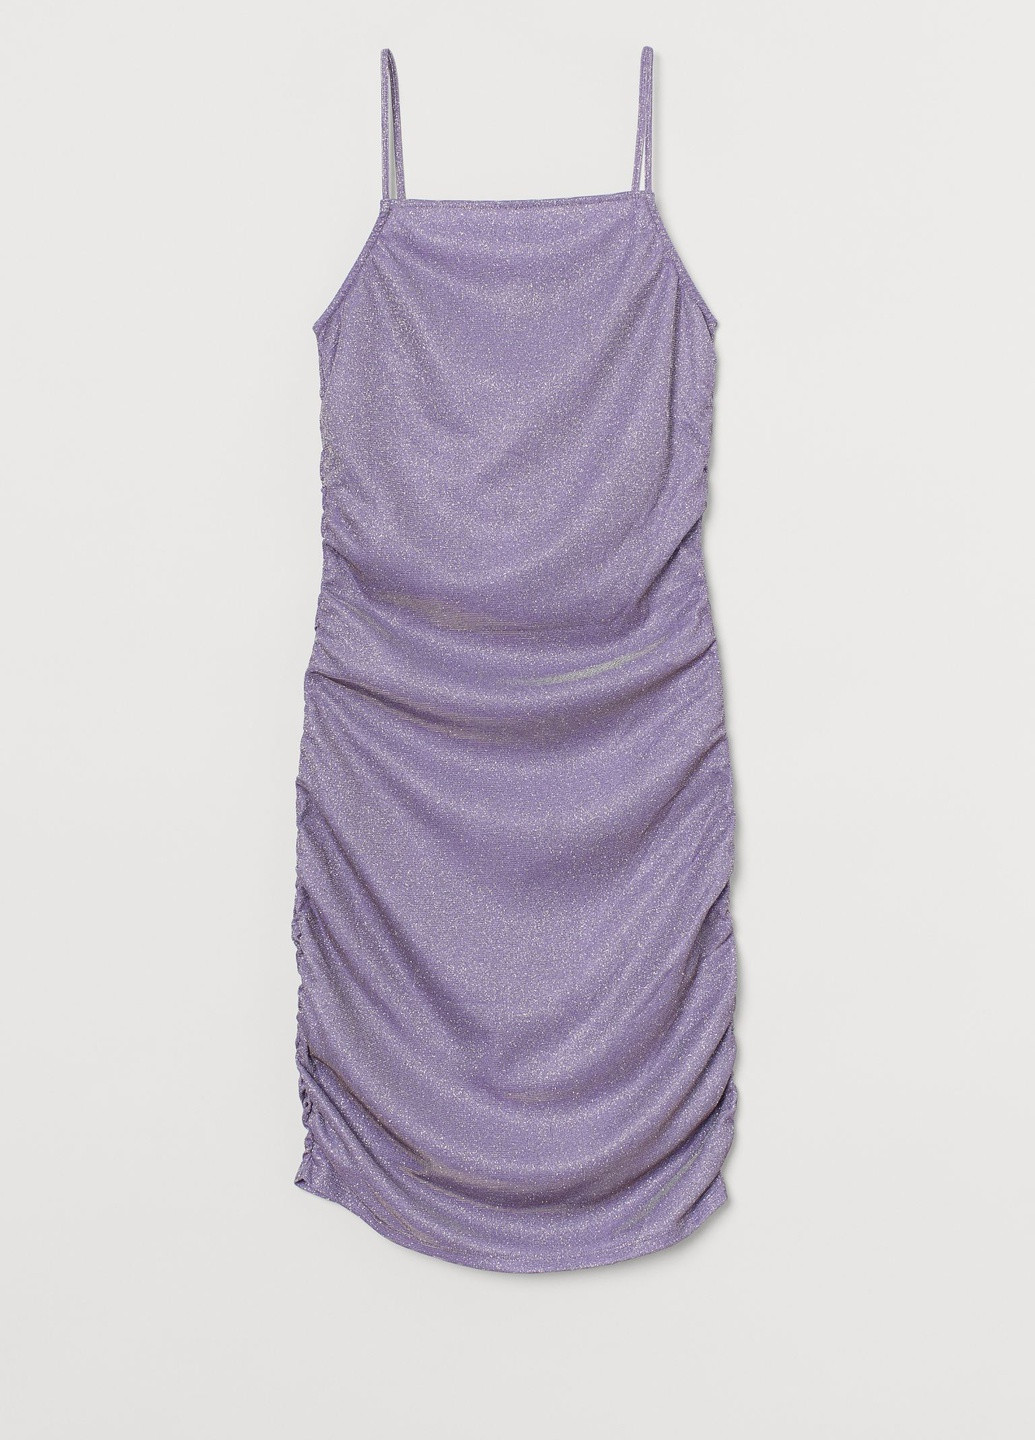 Лавандовое коктейльное платье H&M однотонное